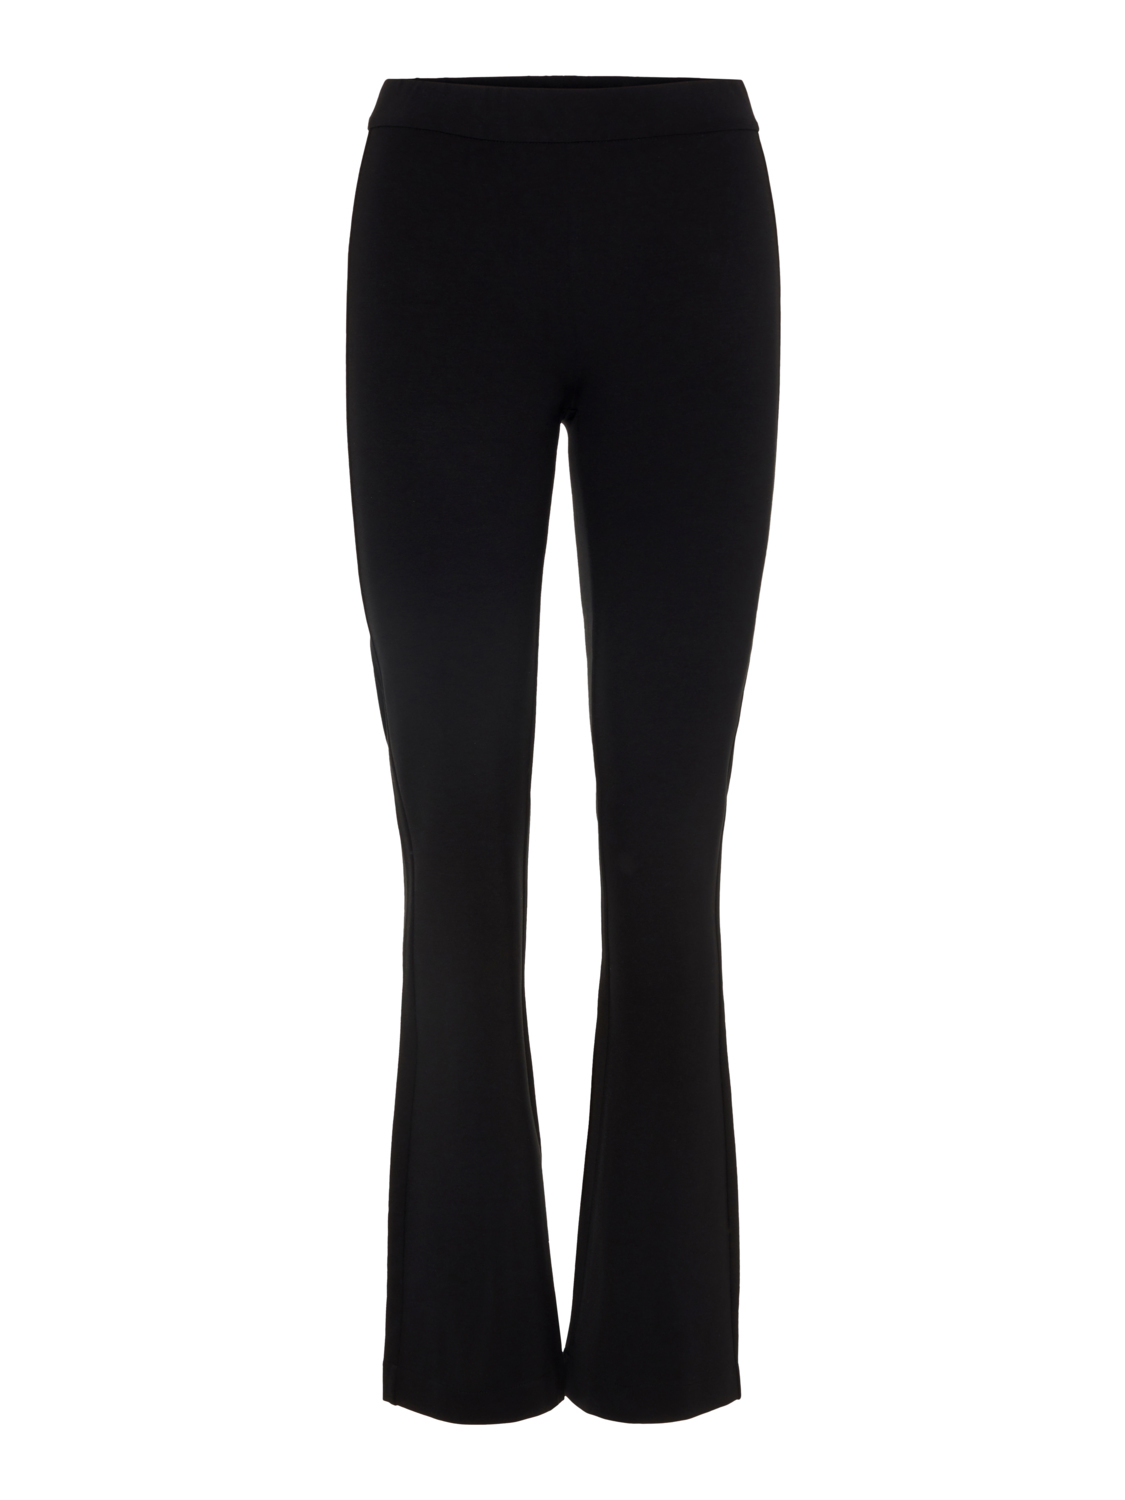 mvO2i Odzież Vero Moda Petite Spodnie Kamma w kolorze Czarnym 